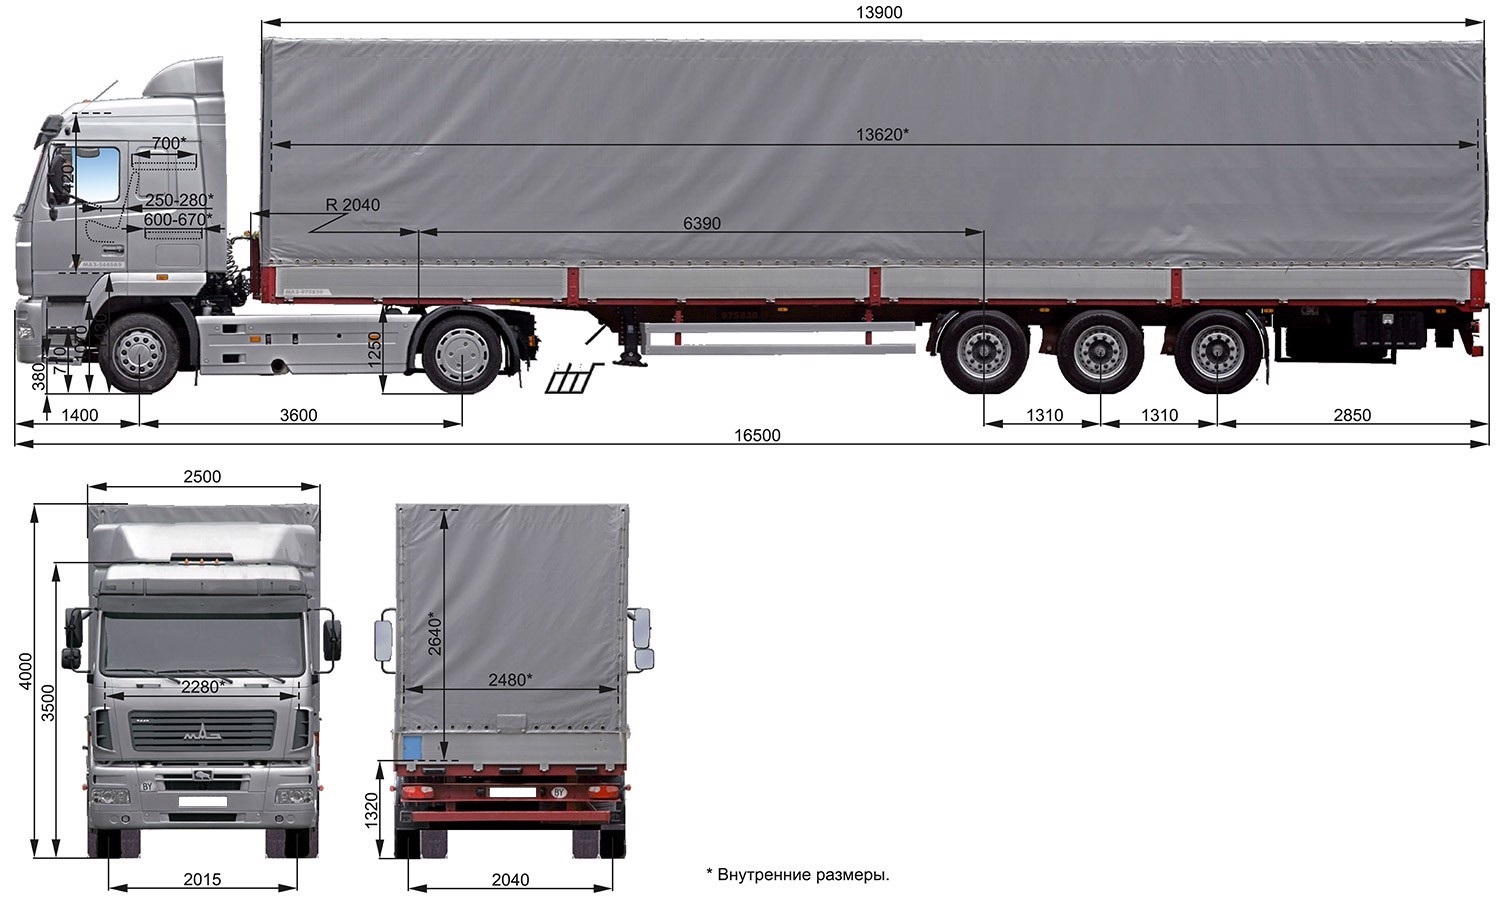 » Типы и размеры транспортных средств для международных грузоперевозок